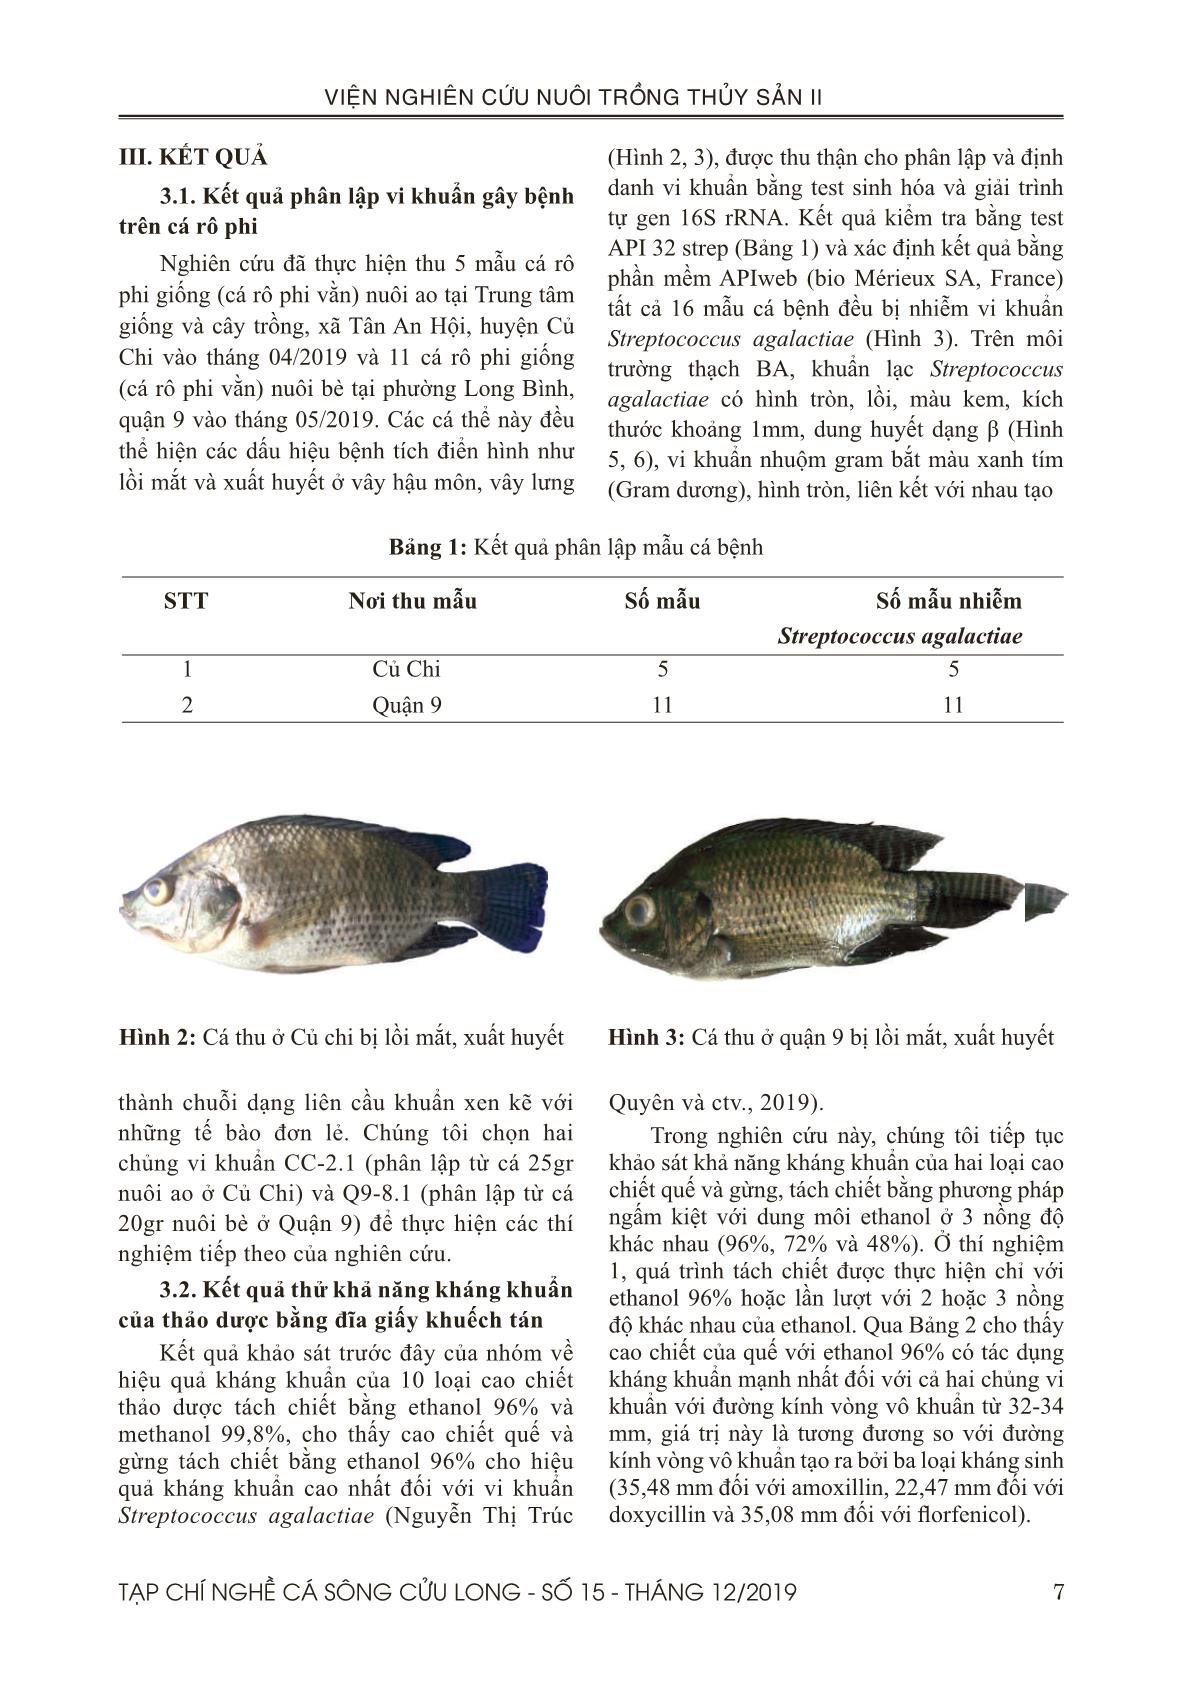 Khảo sát tính kháng khuẩn của cao chiết quế (Cinnamomum verum) và gừng (Zingiber officinale Rose) tách chiết bằng ethanol đối với các chủng vi khuẩn Streptococcus agalactiae phân lập trên cá rô phi giống (Oreochromis spp.) trang 5